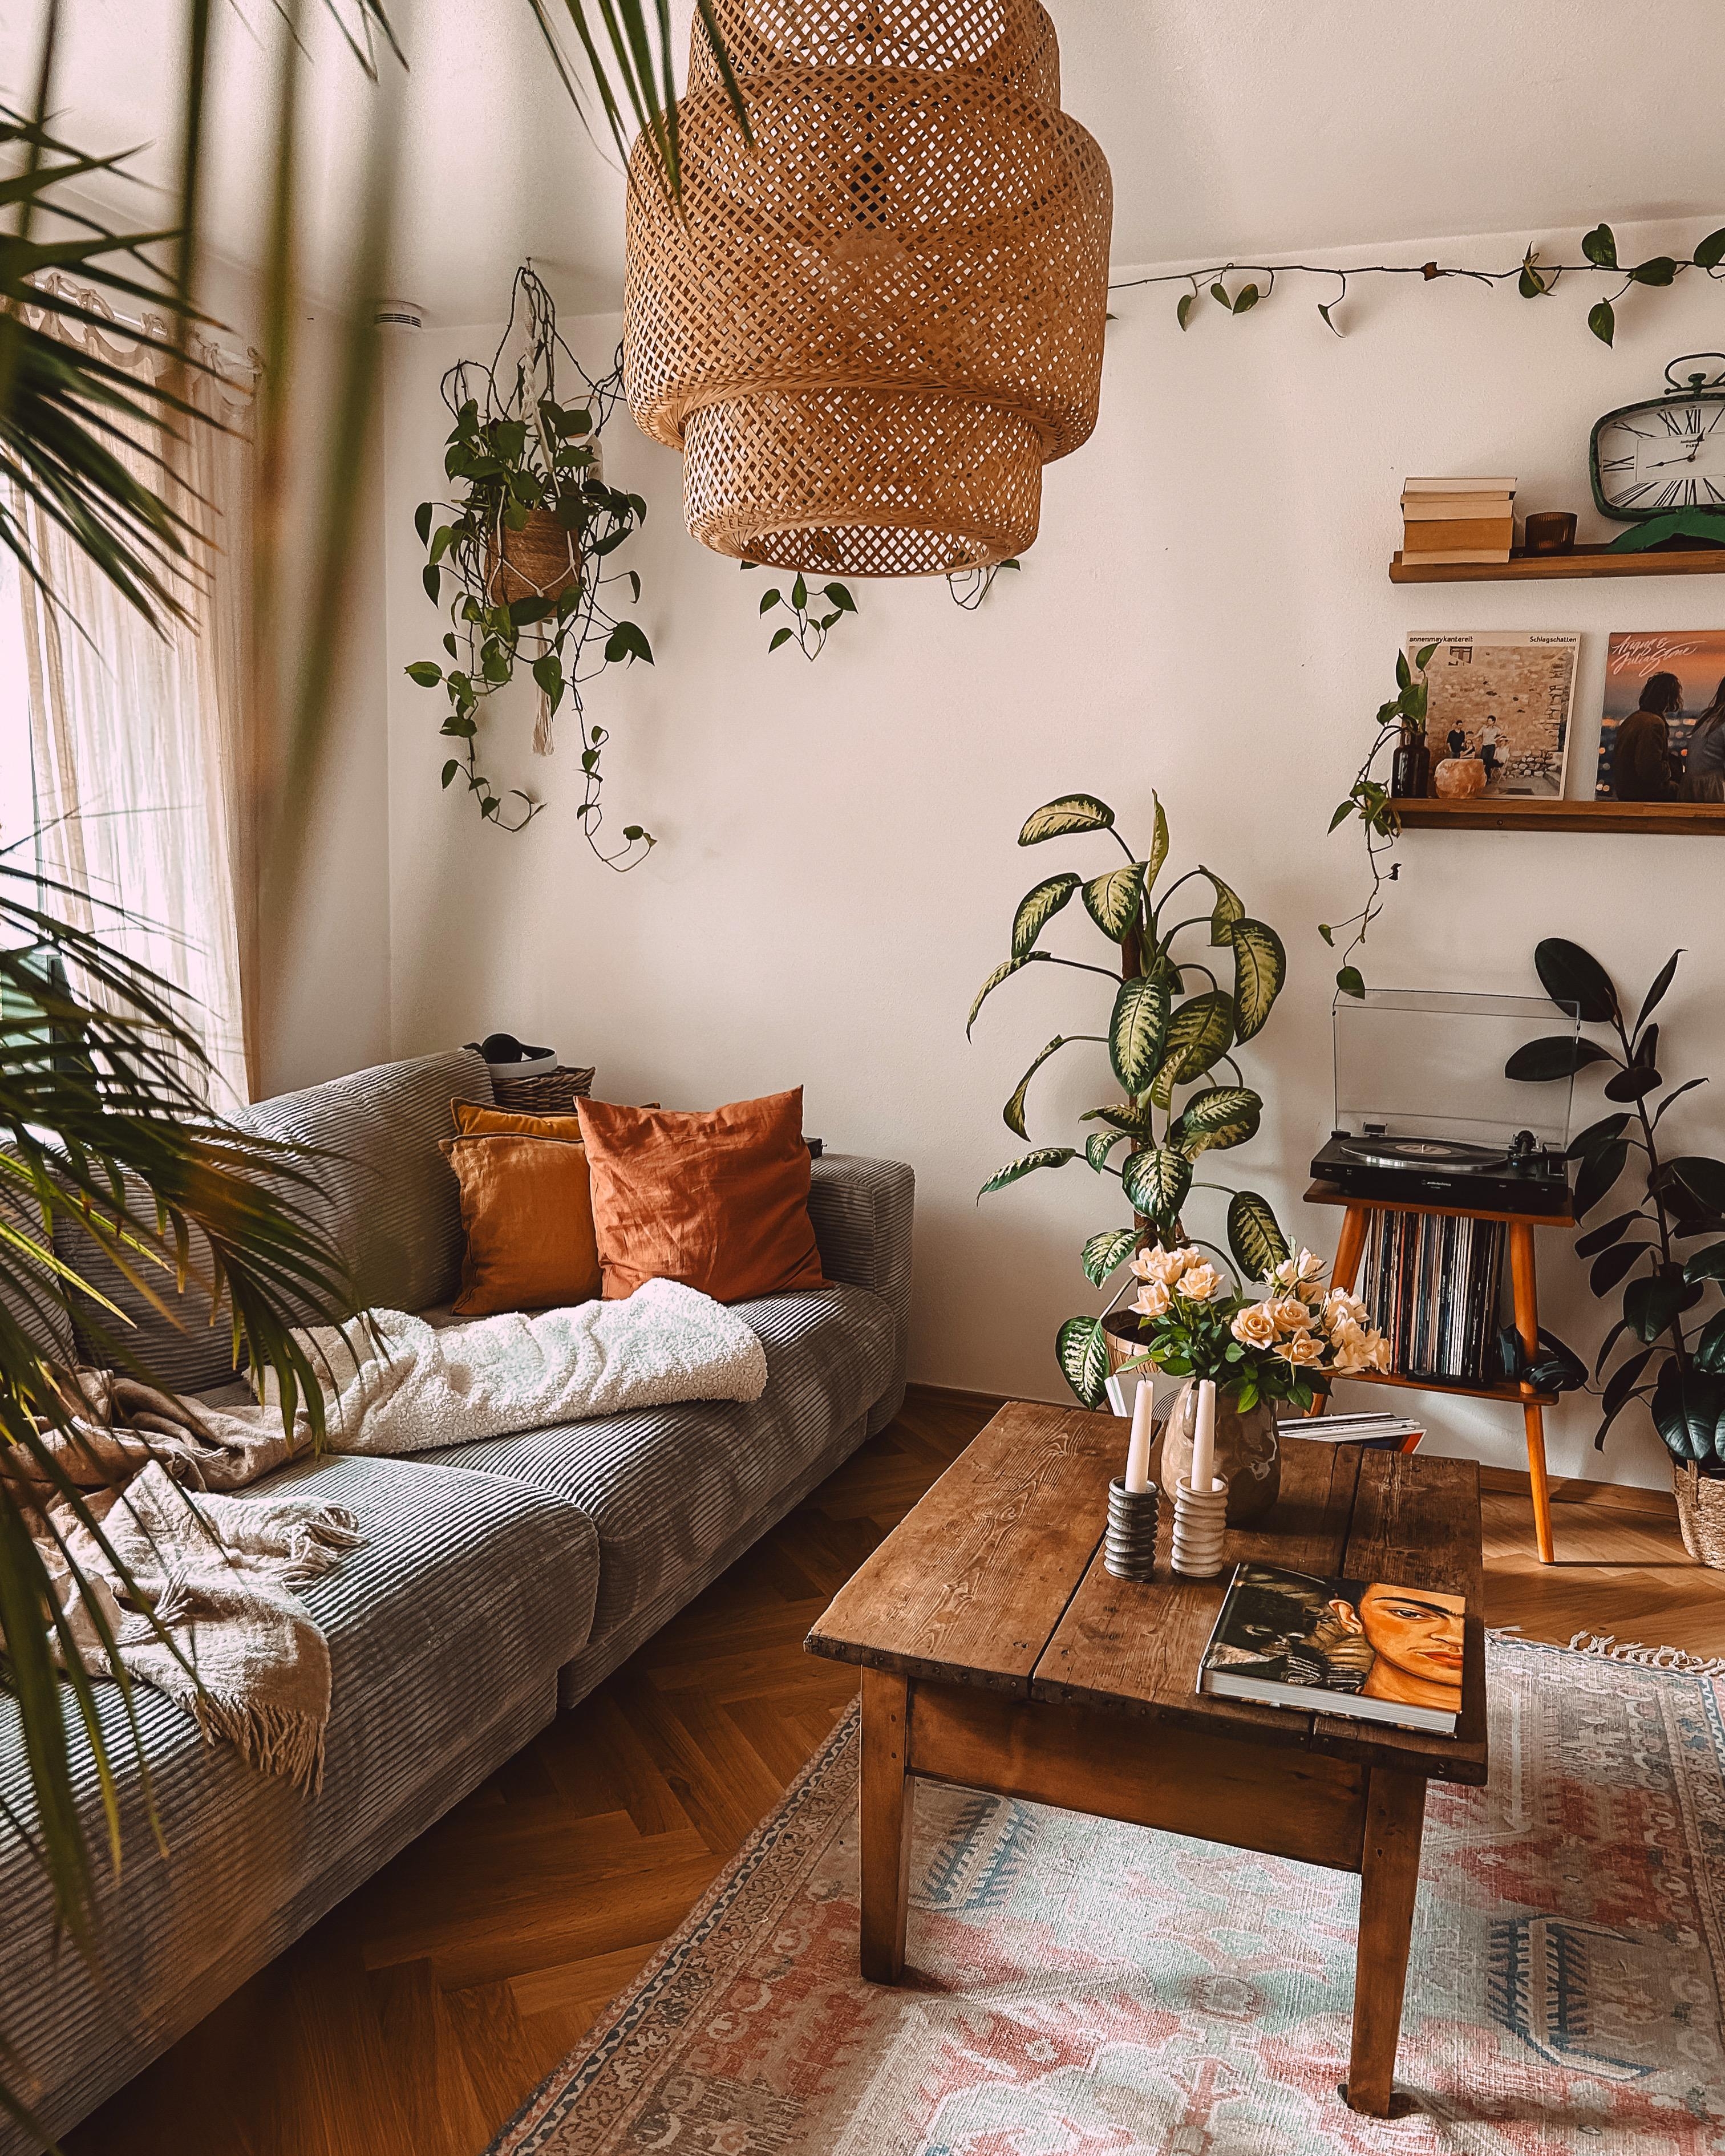 #wohnzimmer #couch #sofa #cordsofa #pflanzen #bilderleiste #ikea #teppich